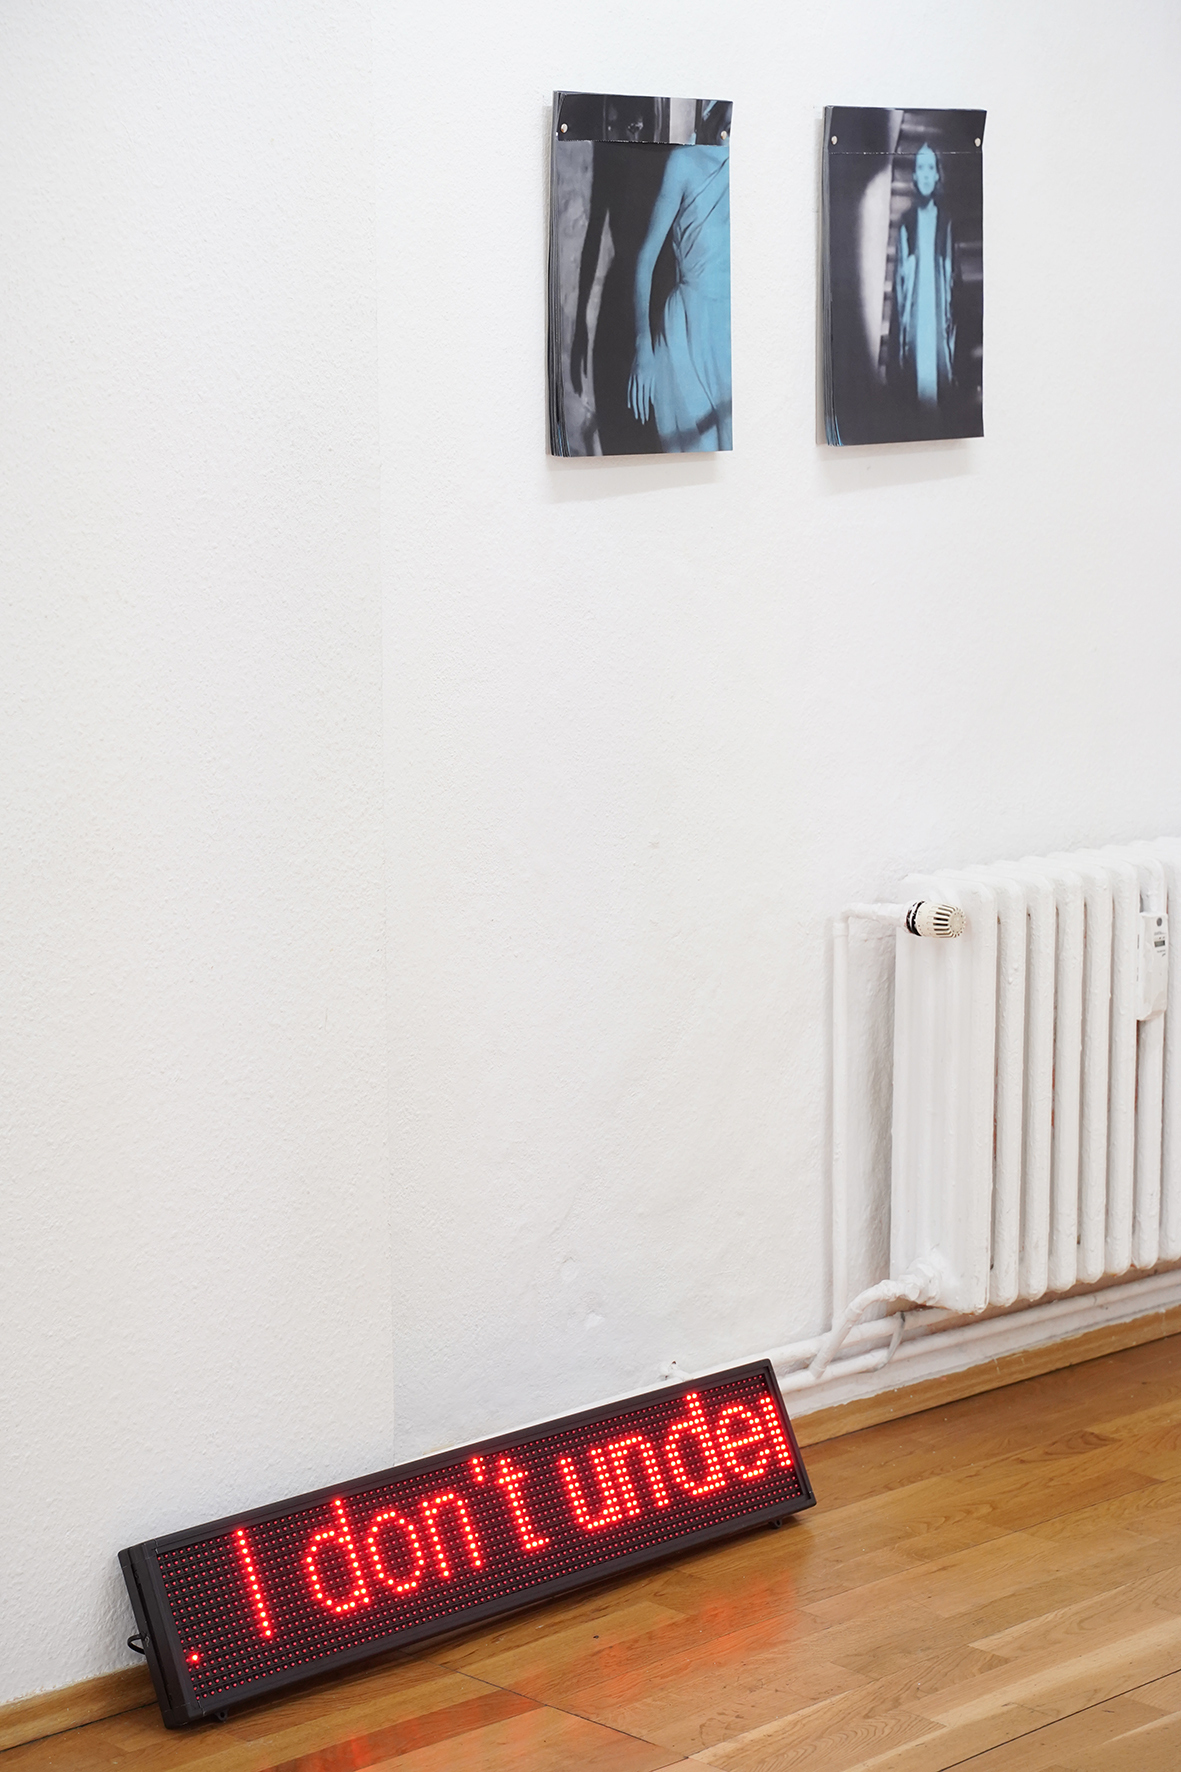 Julia Schäfer, Die Geschichte eines lebenden Wesens, 2020, LED-Display, 99 x 19 cm, Alraune, perforated offset prints, 29,7 x 37 cm